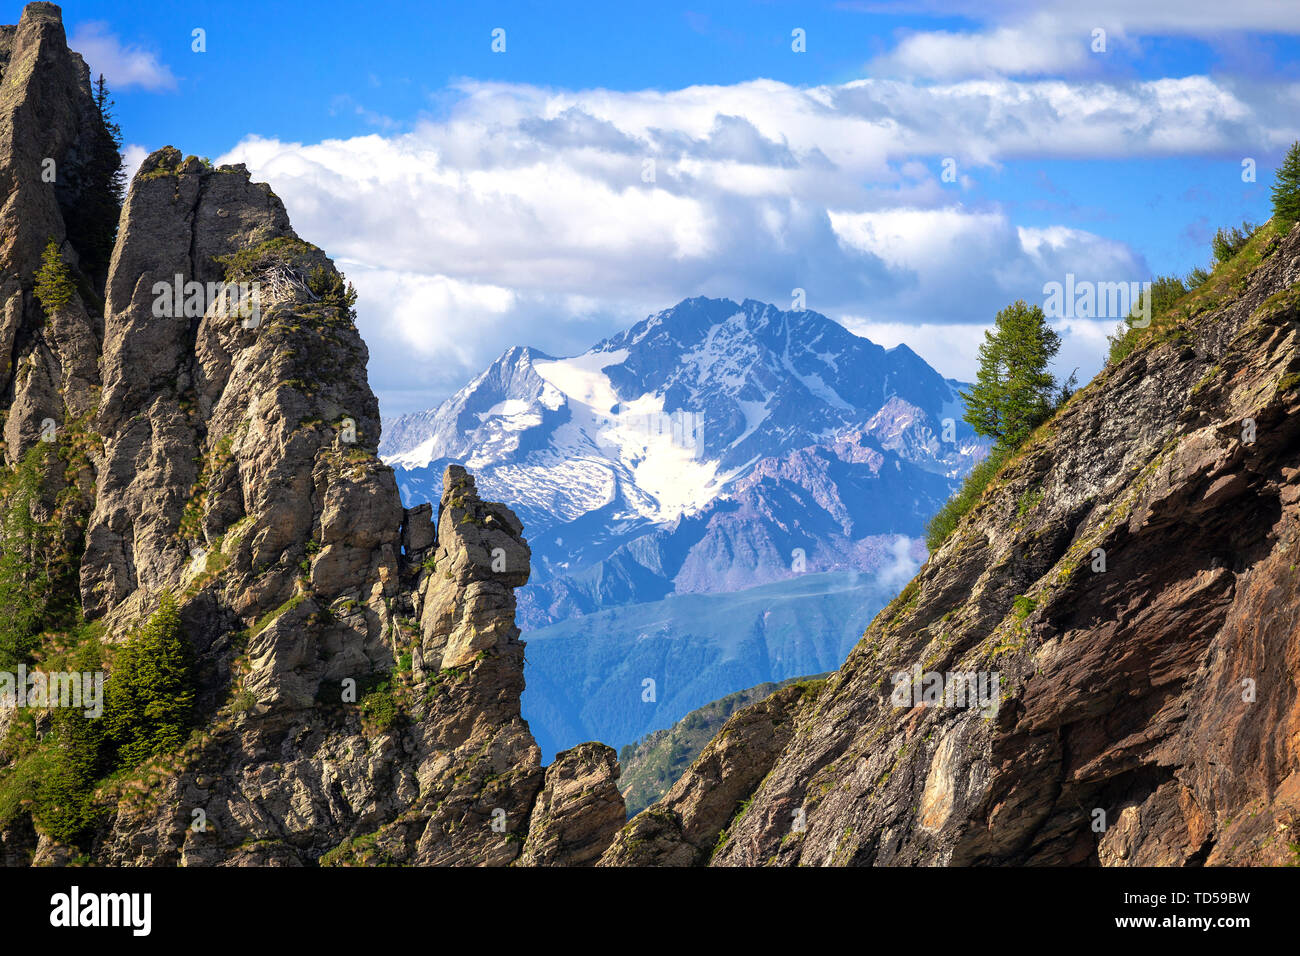 Monte Disgrazia entre dos picos rocosos, Valgerola, Los Alpes Oróbicos, Valtellina, Lombardía, Italia, Europa Foto de stock